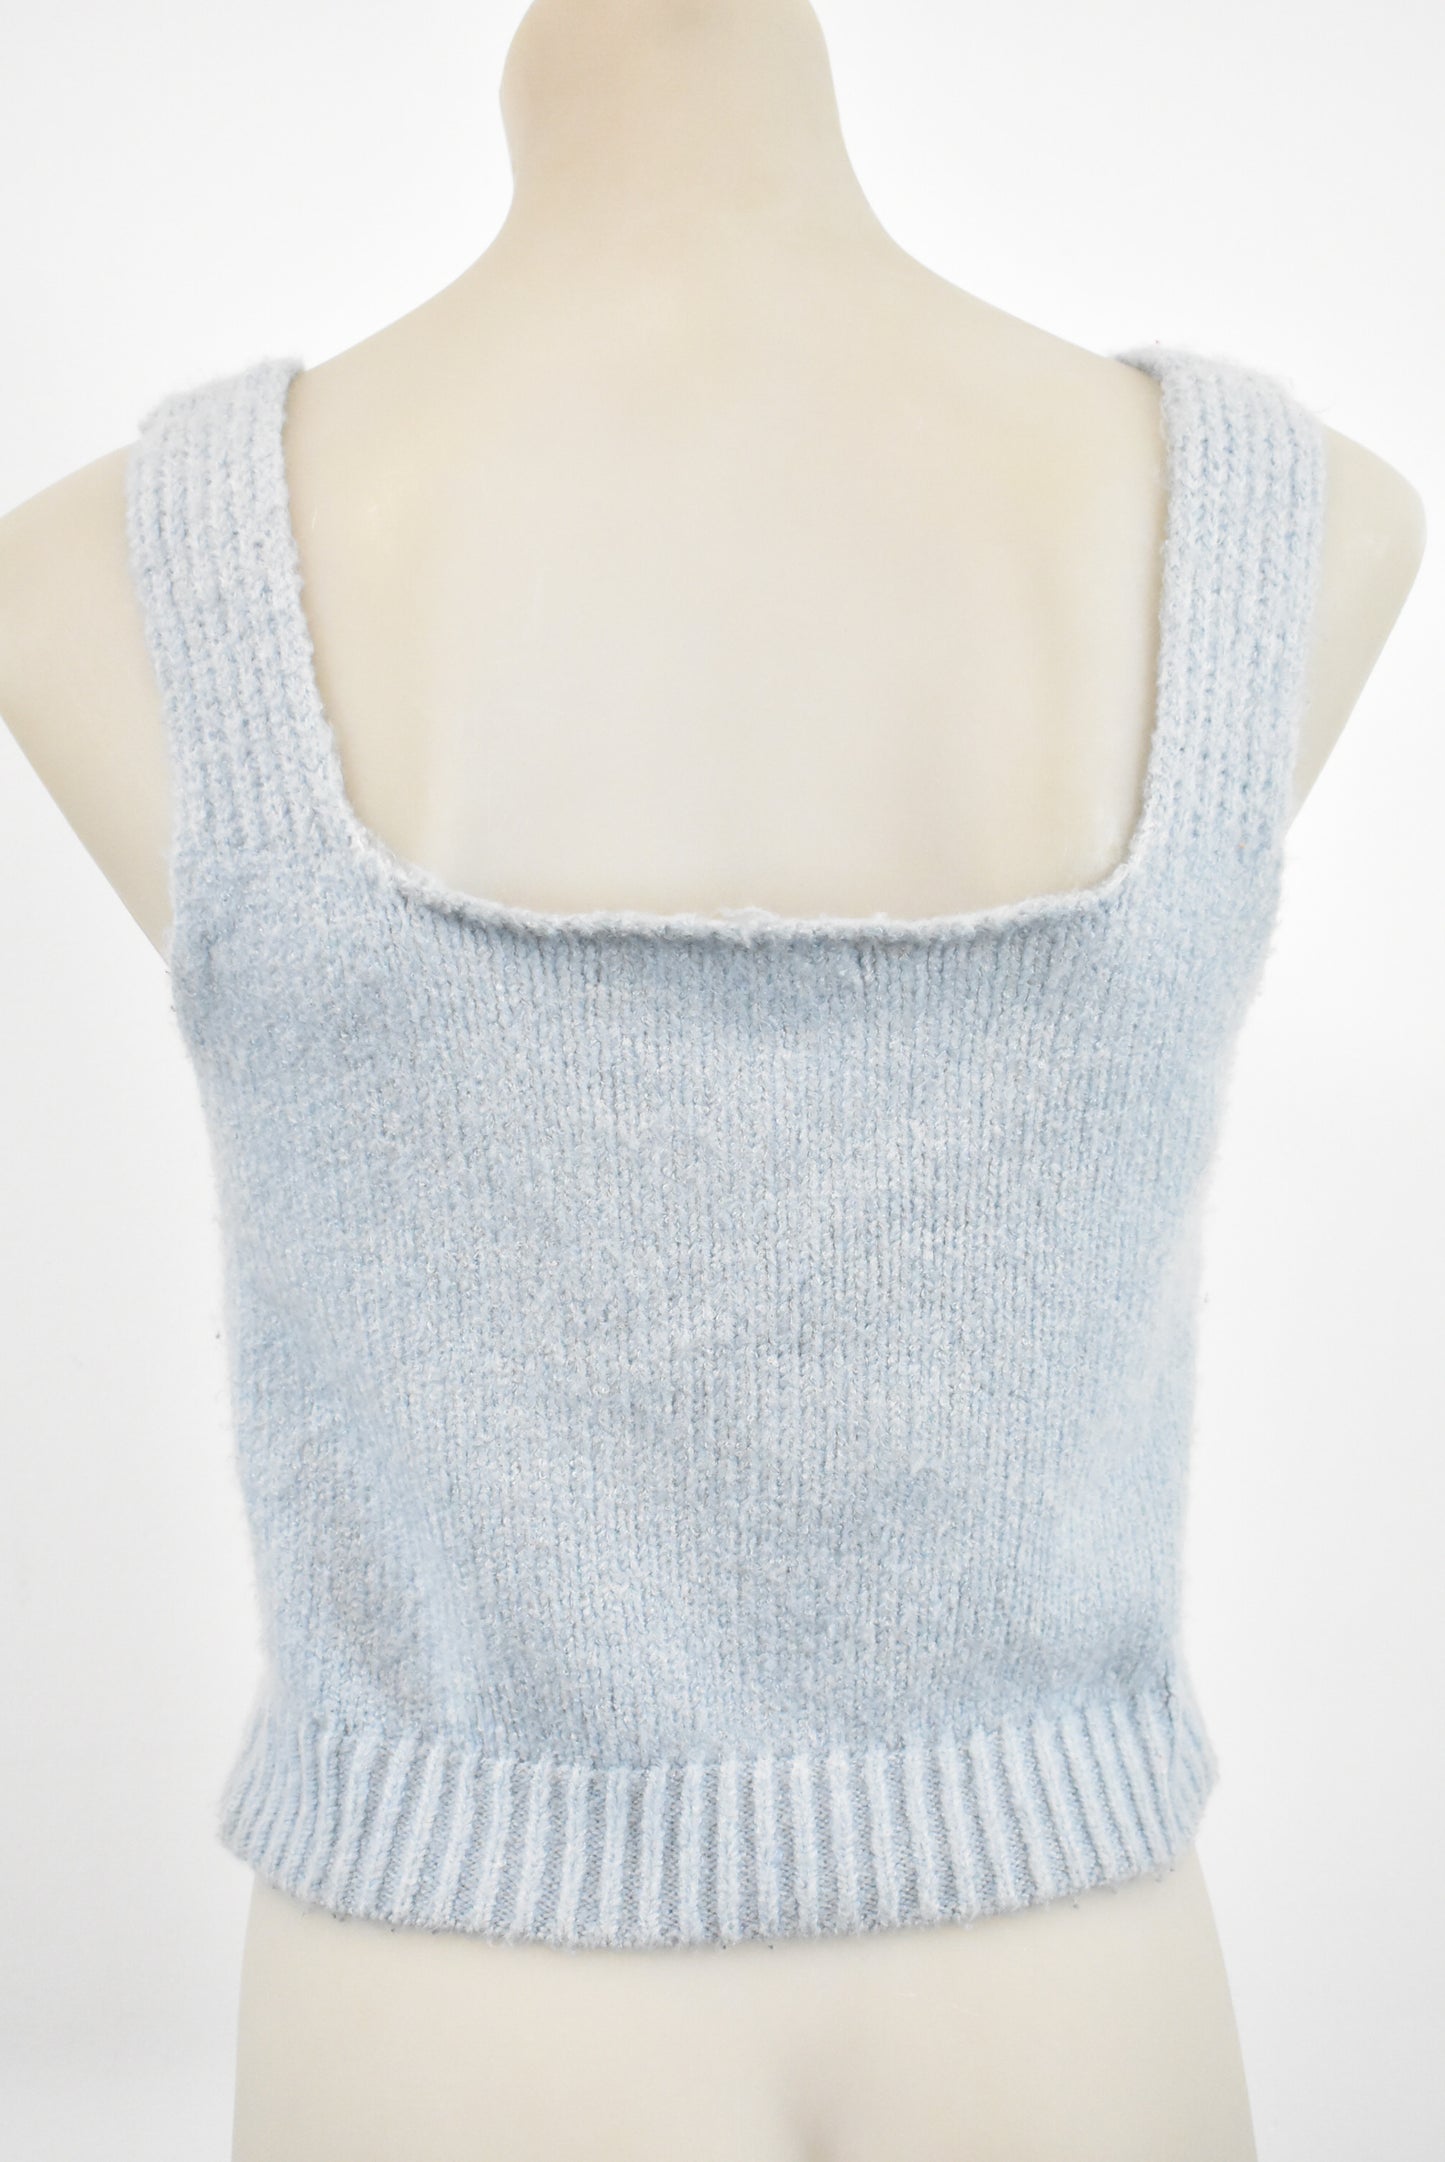 LT Woman sleeveless knit crop top, S